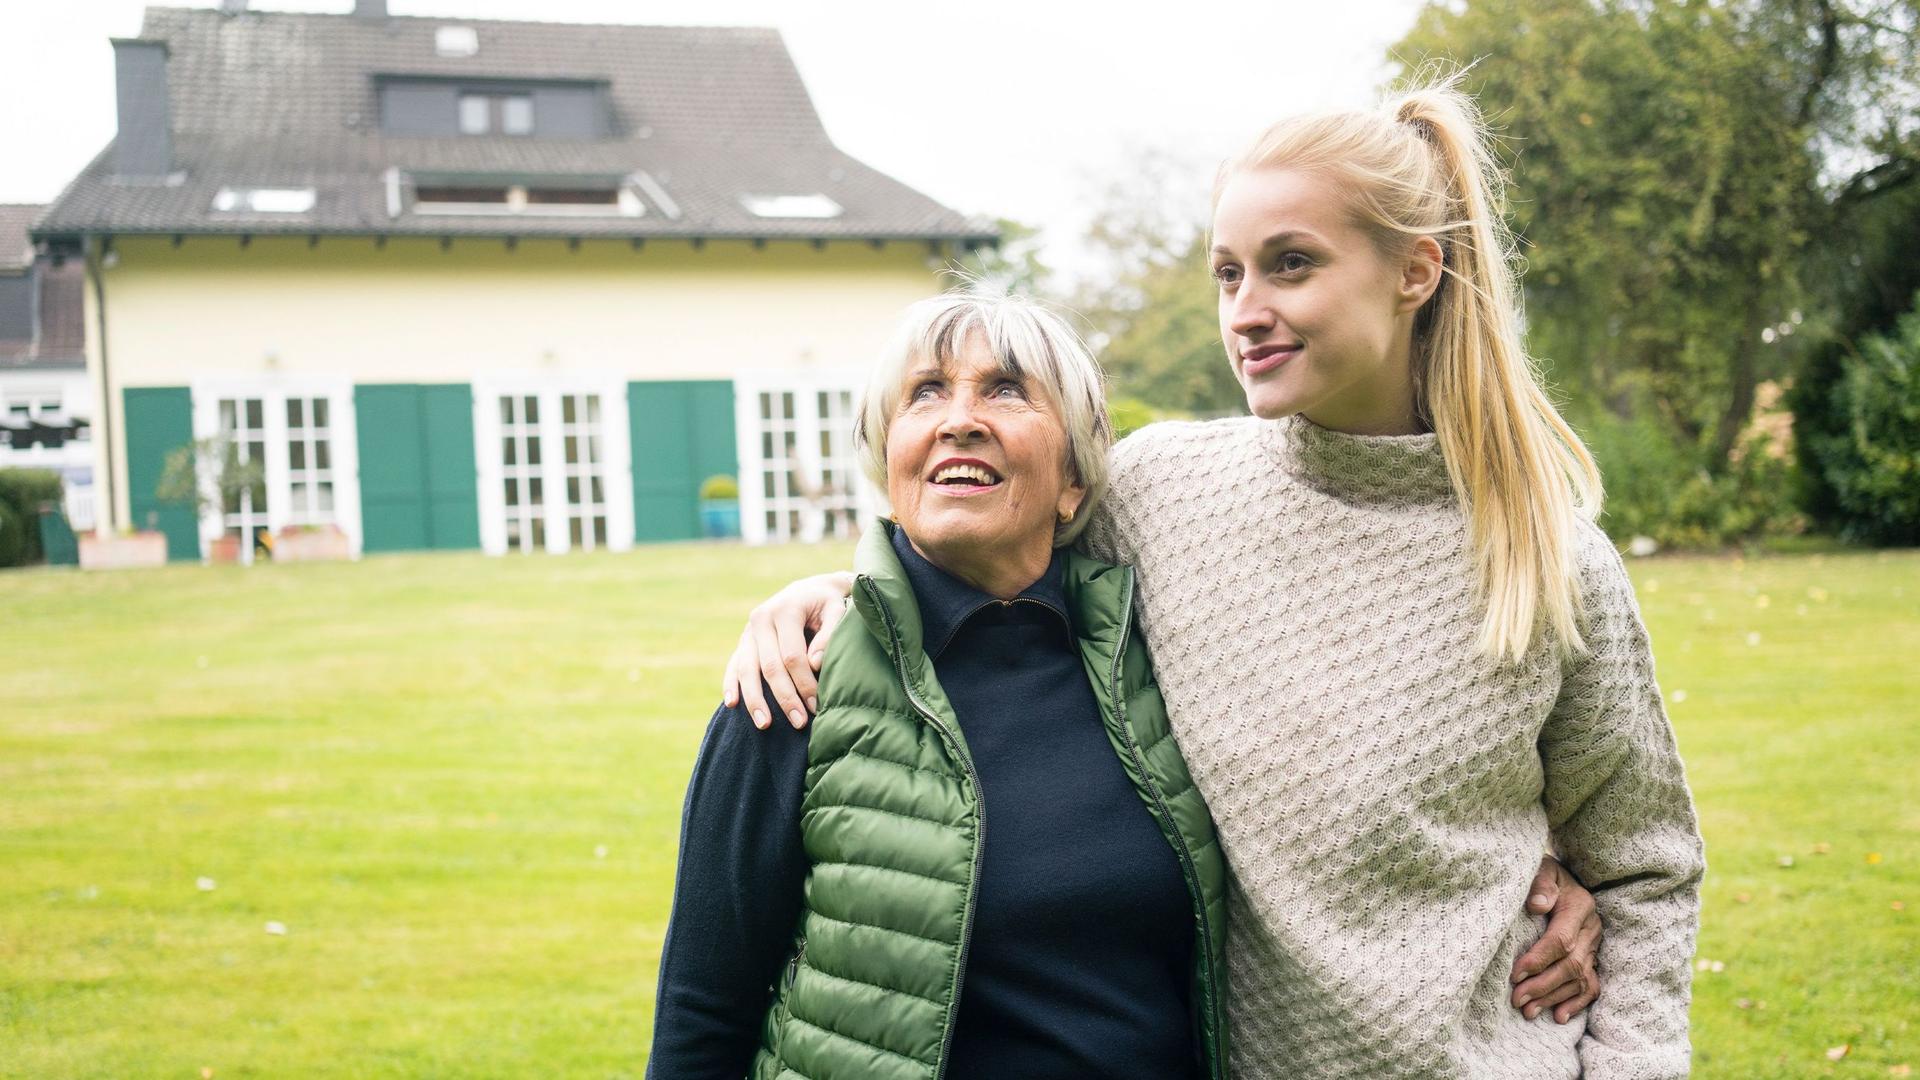 Eine junge Frau mit langem blonden Pferdeschwanz legt ihren Arm um ihre Großmutter. Sie stehen auf der Wiese eines Grundstücks. Im Hintergrund steht ein schönes altes Wohnhaus. Beide lächeln.